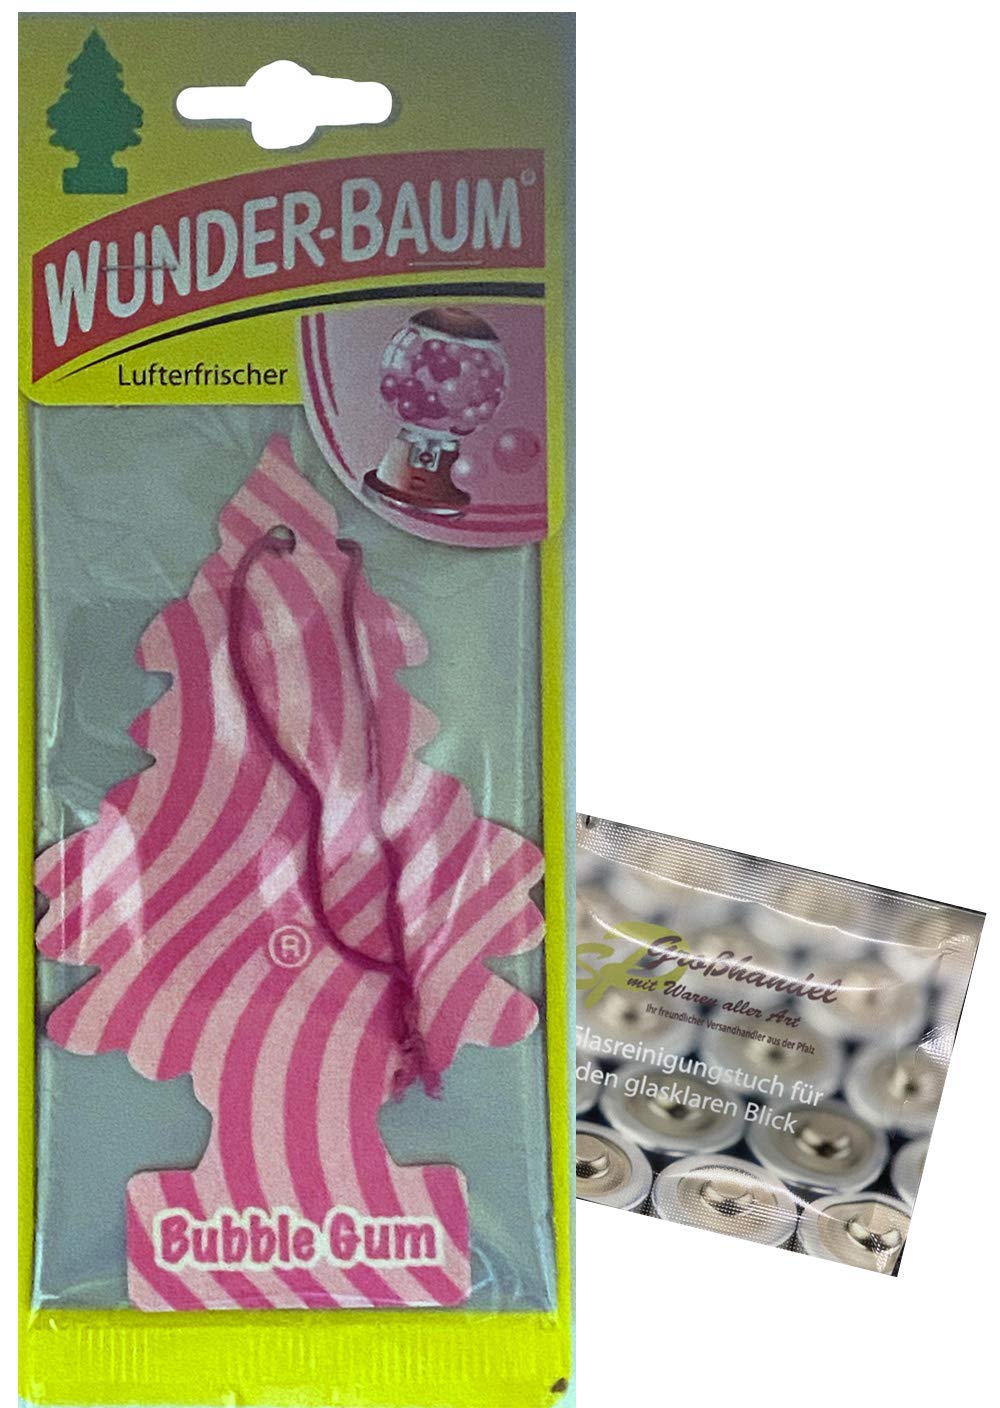 Wunderbaum 24er-Box Original Lufterfrischer Bubble Gum Duftbaum inkl. 1 x Glasreinigungstuch von SP Großhandel Gratiszugabe von WUNDER-BAUM